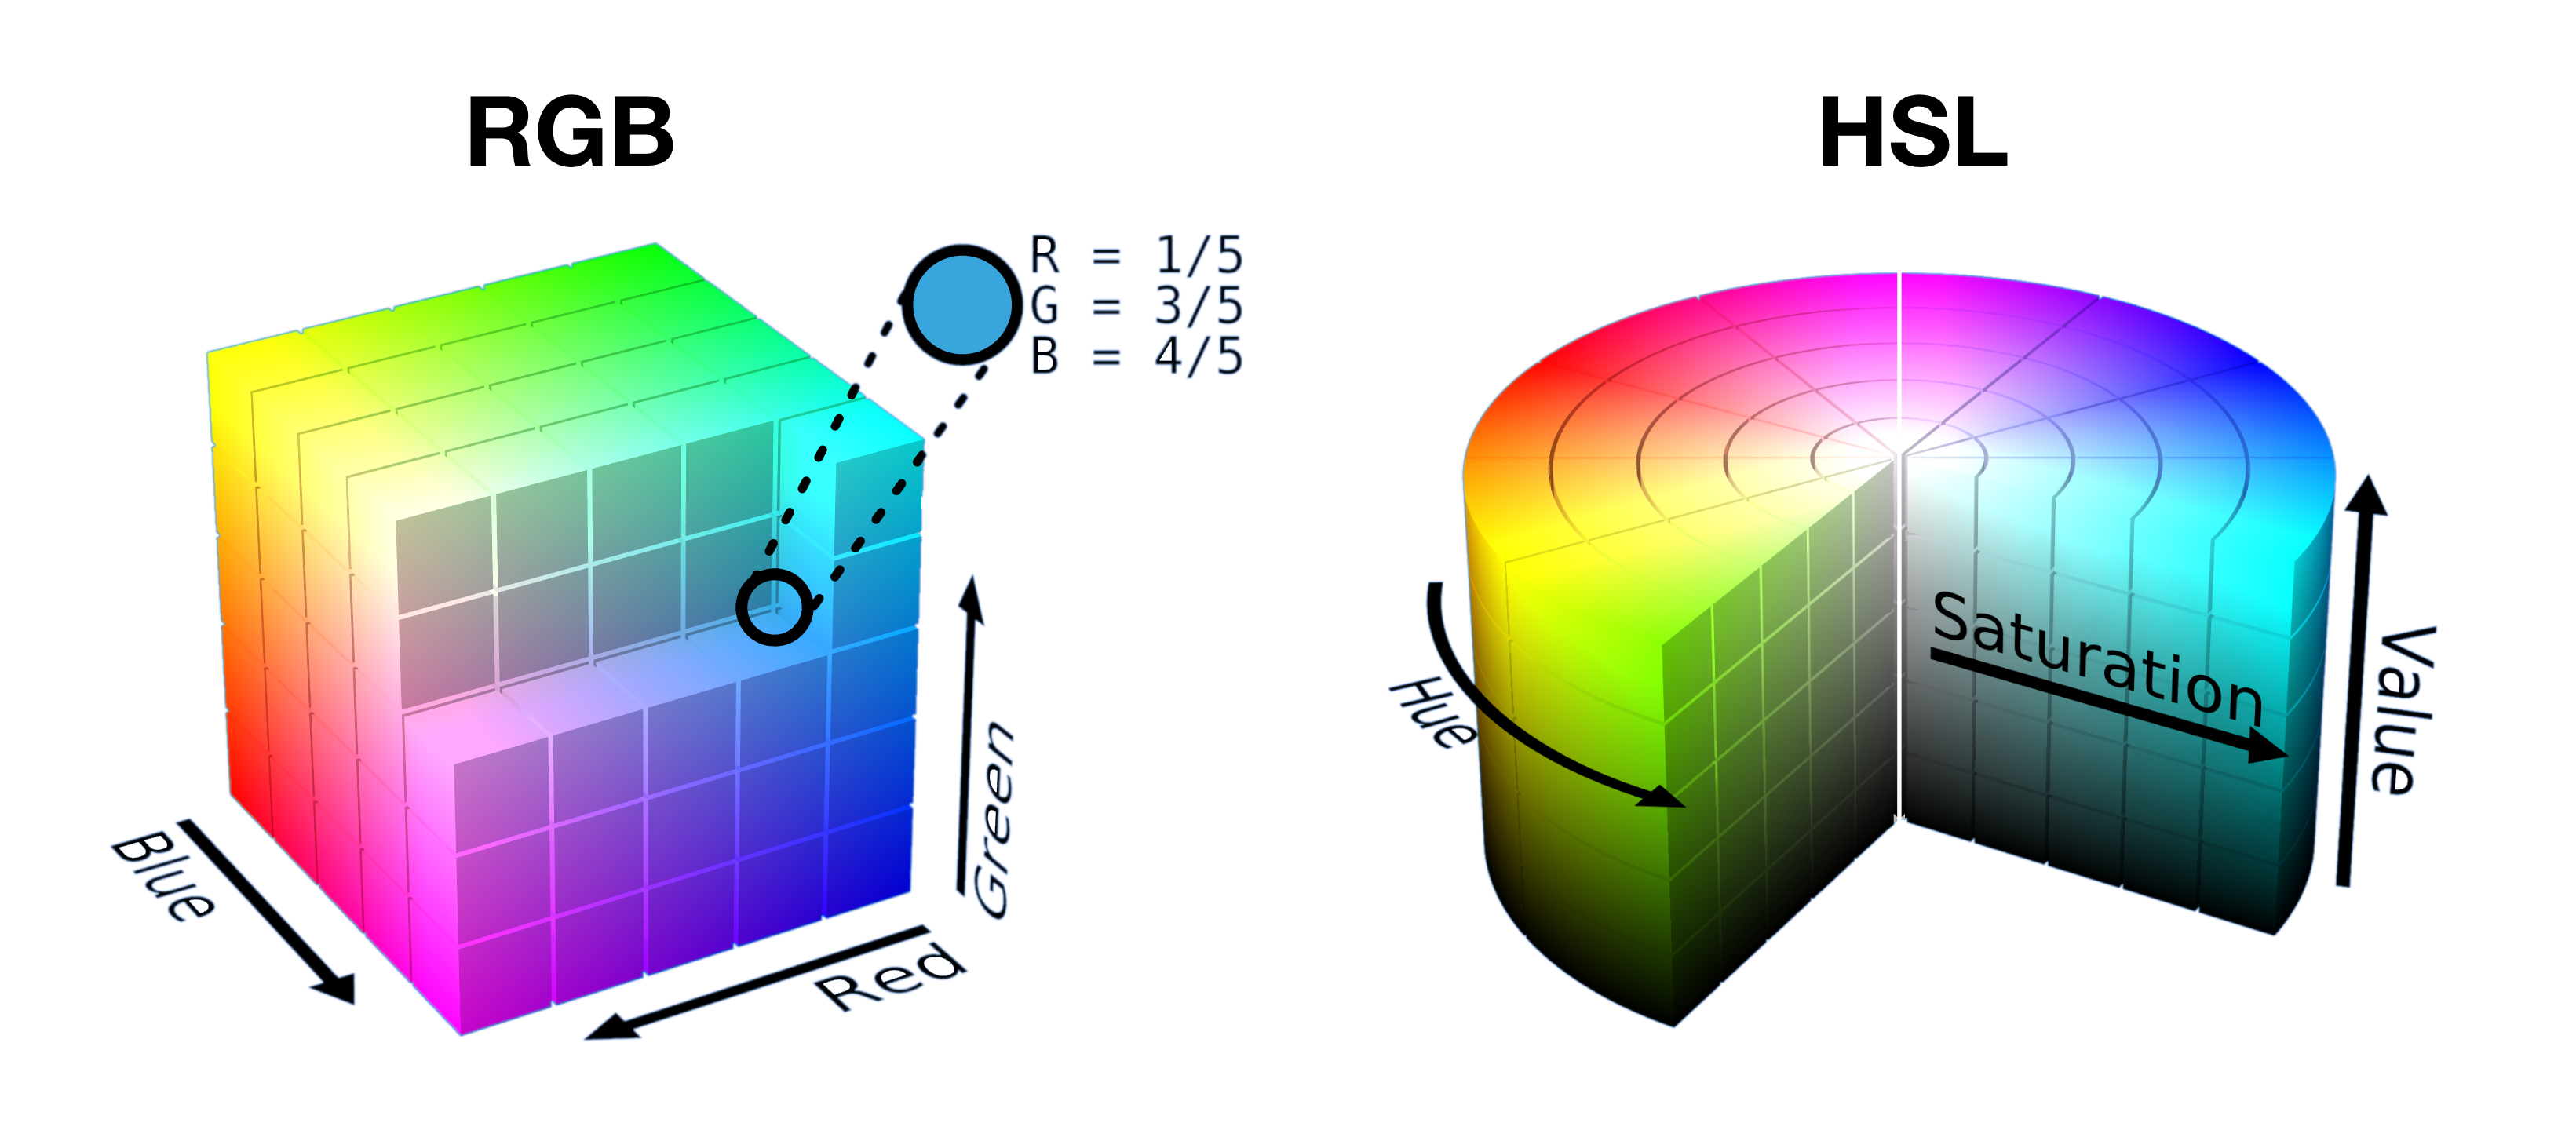 یک مکعب RGB نیمه برش باز و برش‌های آن در استوانه HSL در کنار هم نشان داده شده‌اند تا نشان دهند که چگونه رنگ‌ها در هر فضا به شکلی بسته‌بندی می‌شوند.